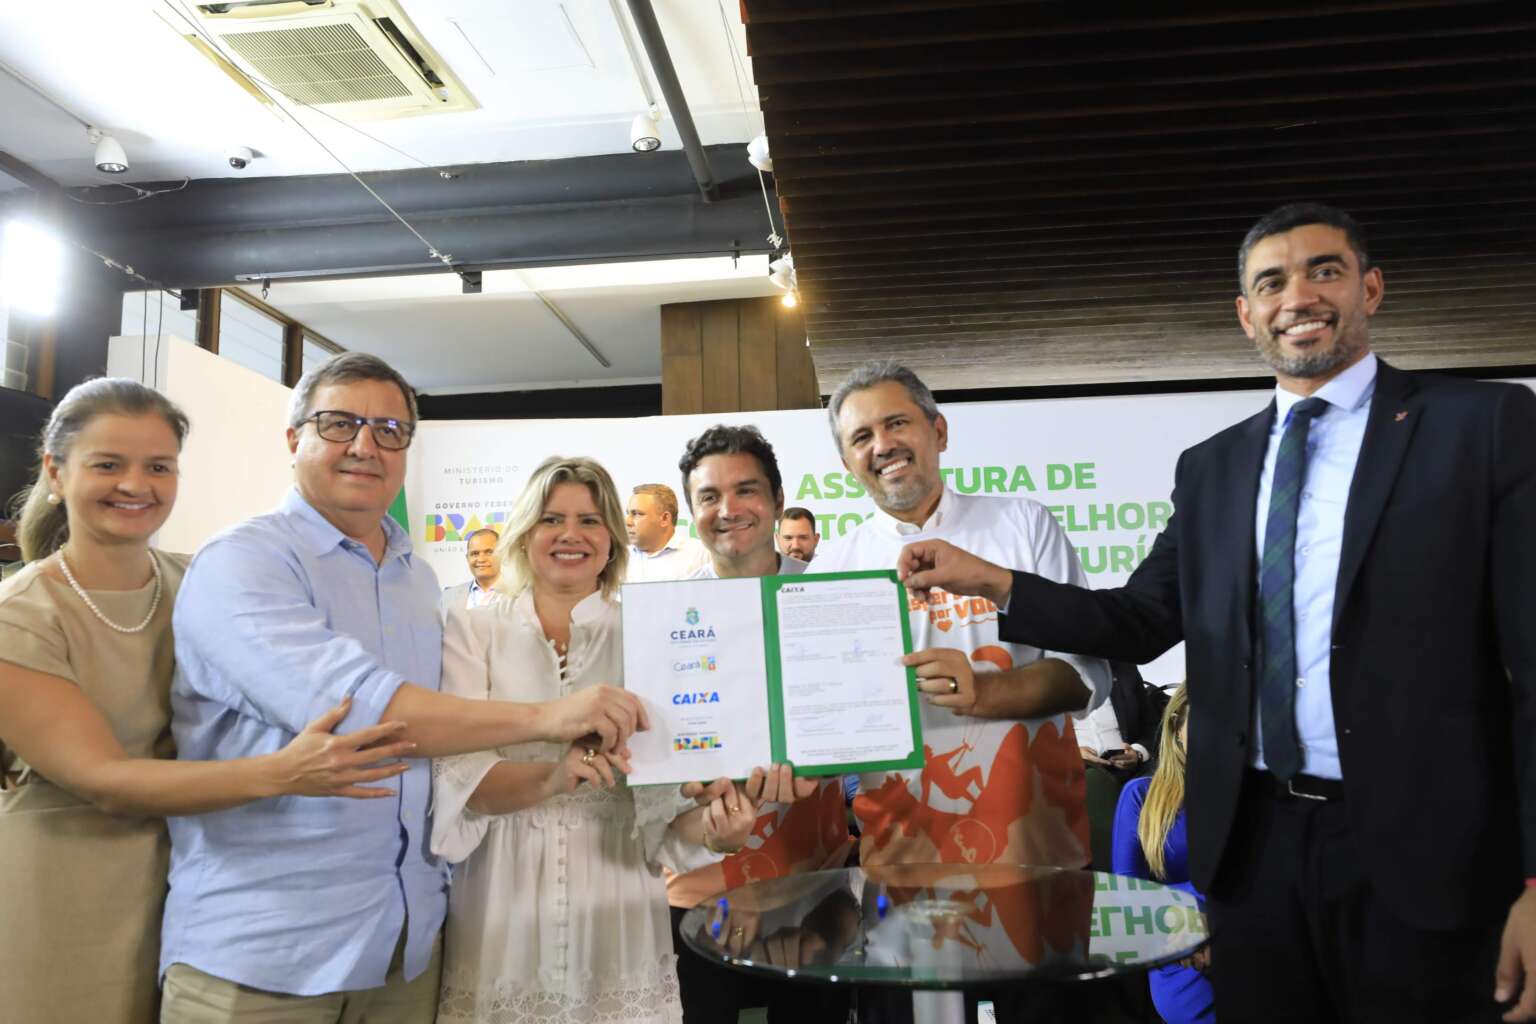 Acordo entre Governo do Ceará e União prevê R$ 28 bilhões para infraestrutura turística